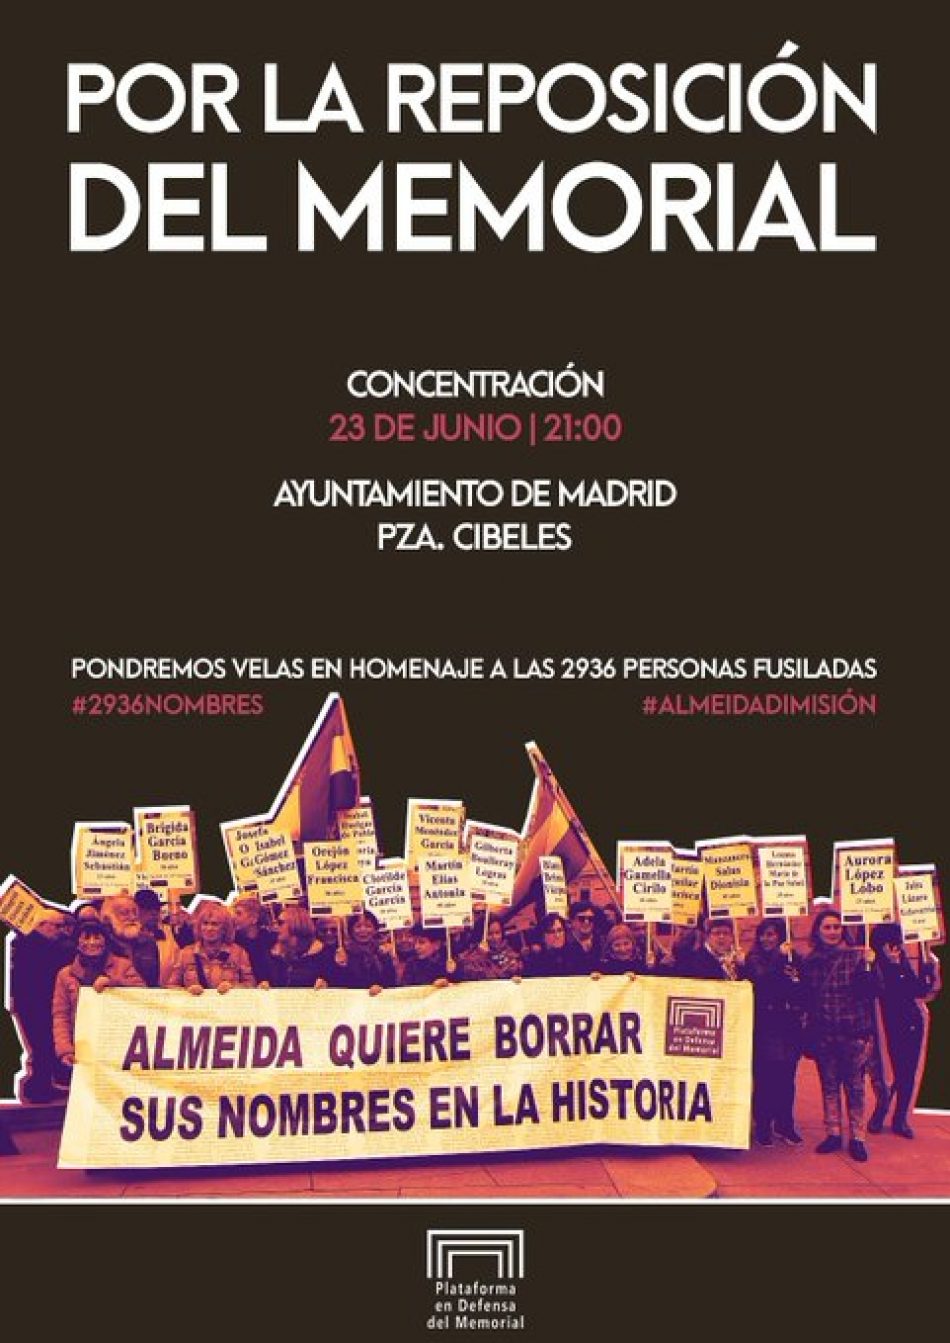 Concentración por la reposición del Memorial del Cementerio del Este, el 23 de junio, en la puerta del Ayuntamiento de Madrid